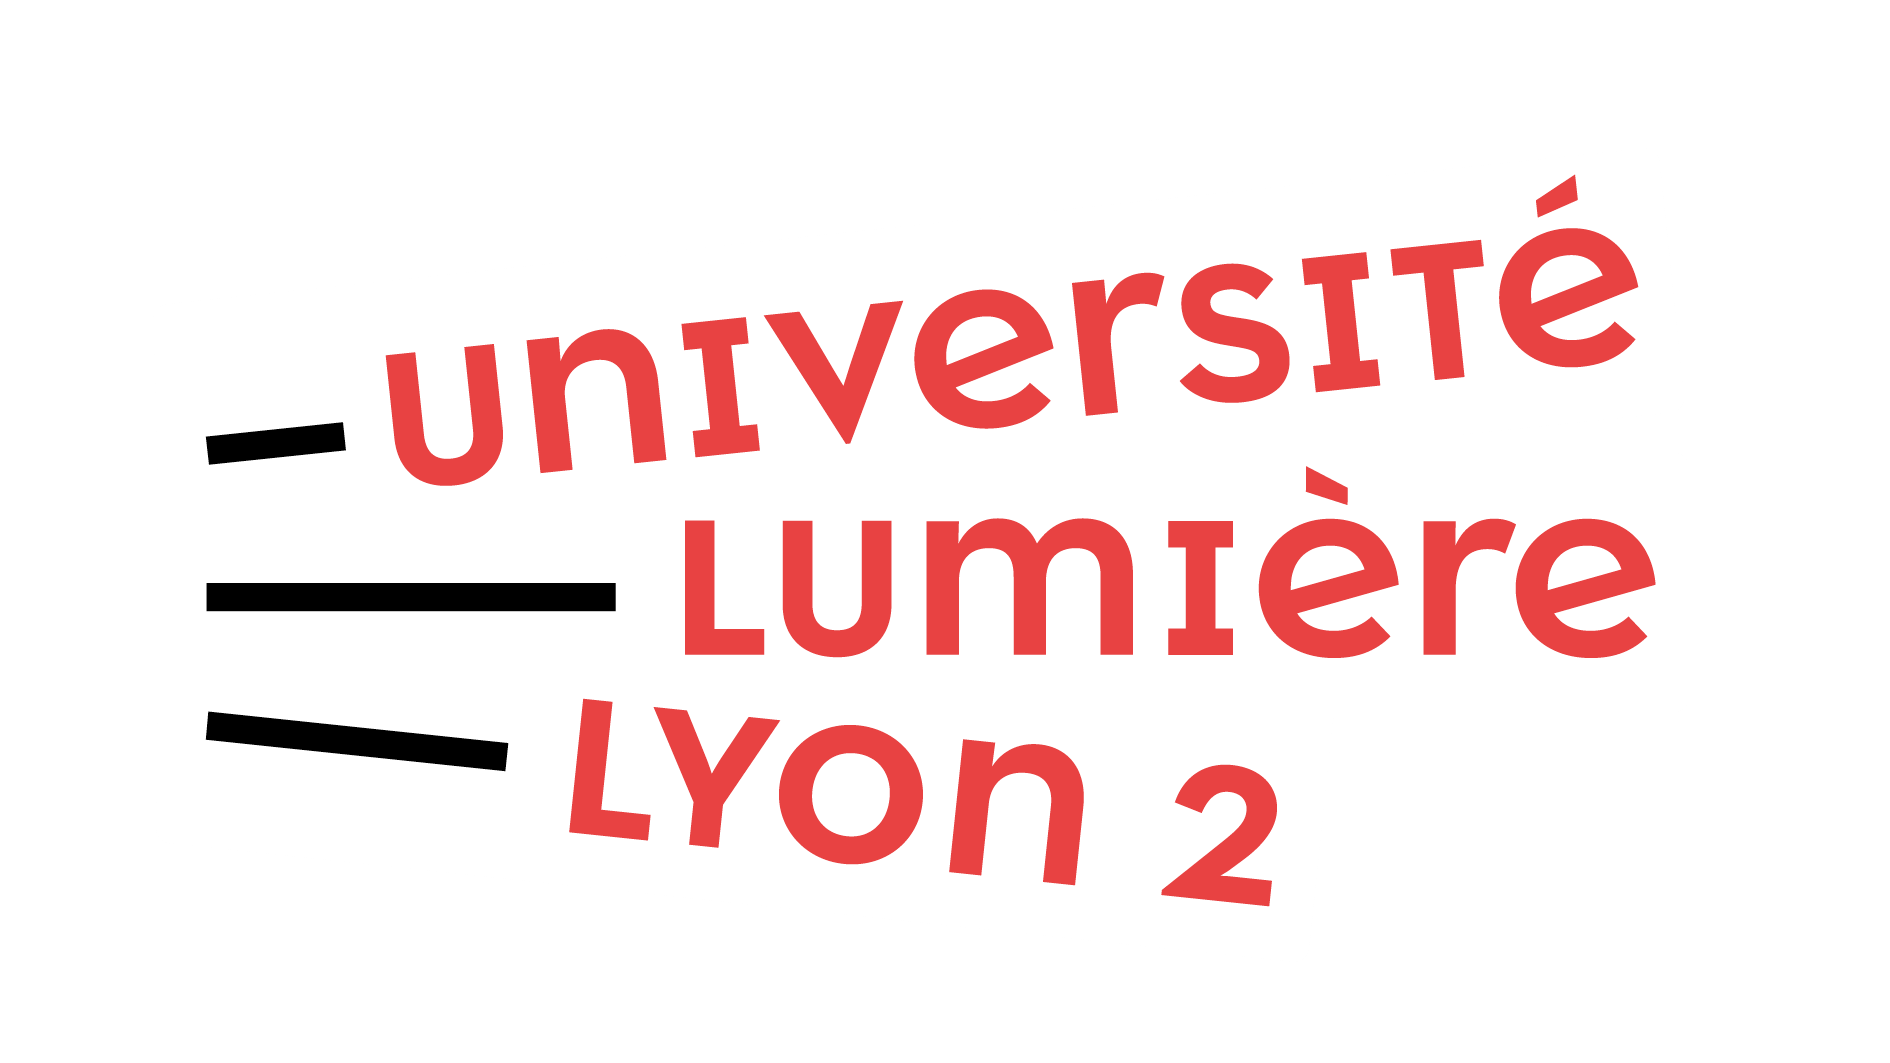 Logo université lyon 2